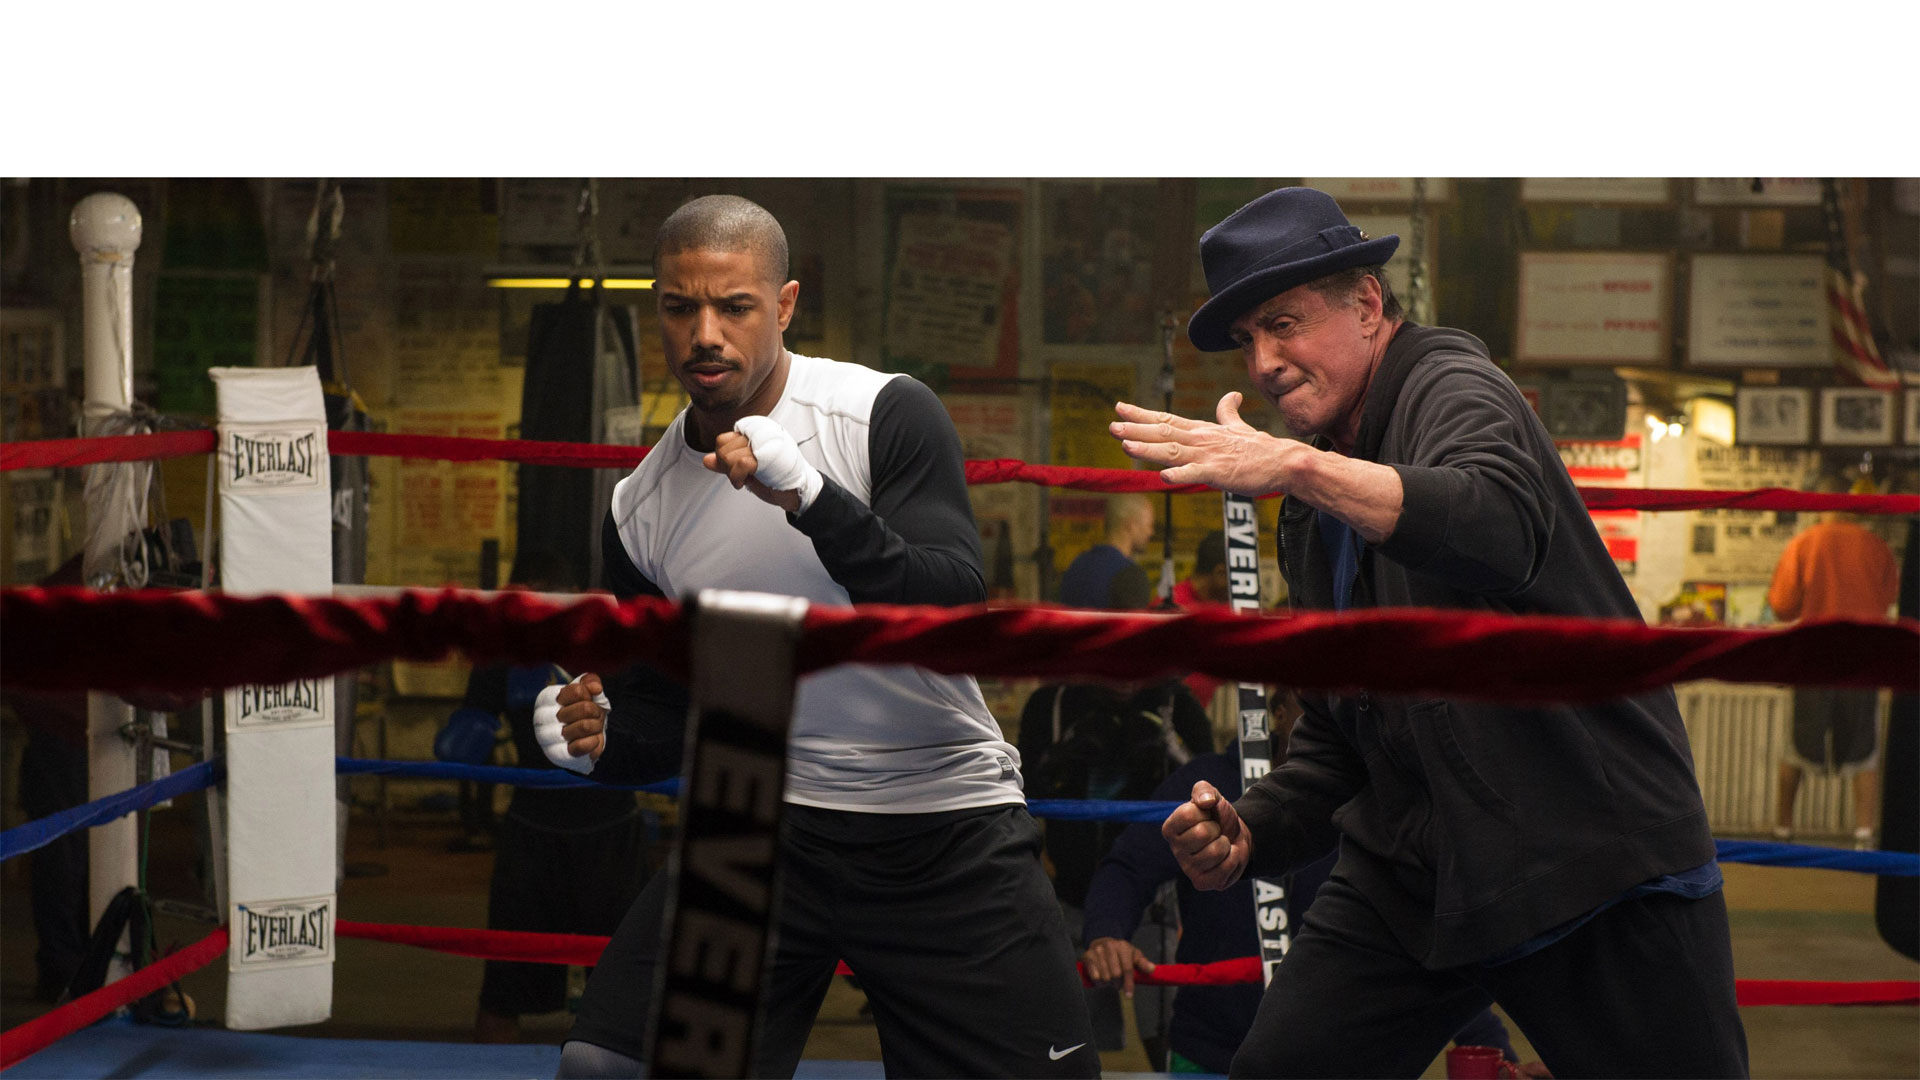 La película Creed, protagonizada por Stallone, logró posicionarse en el tercer lugar de la cartelera americana en su semana de estreno